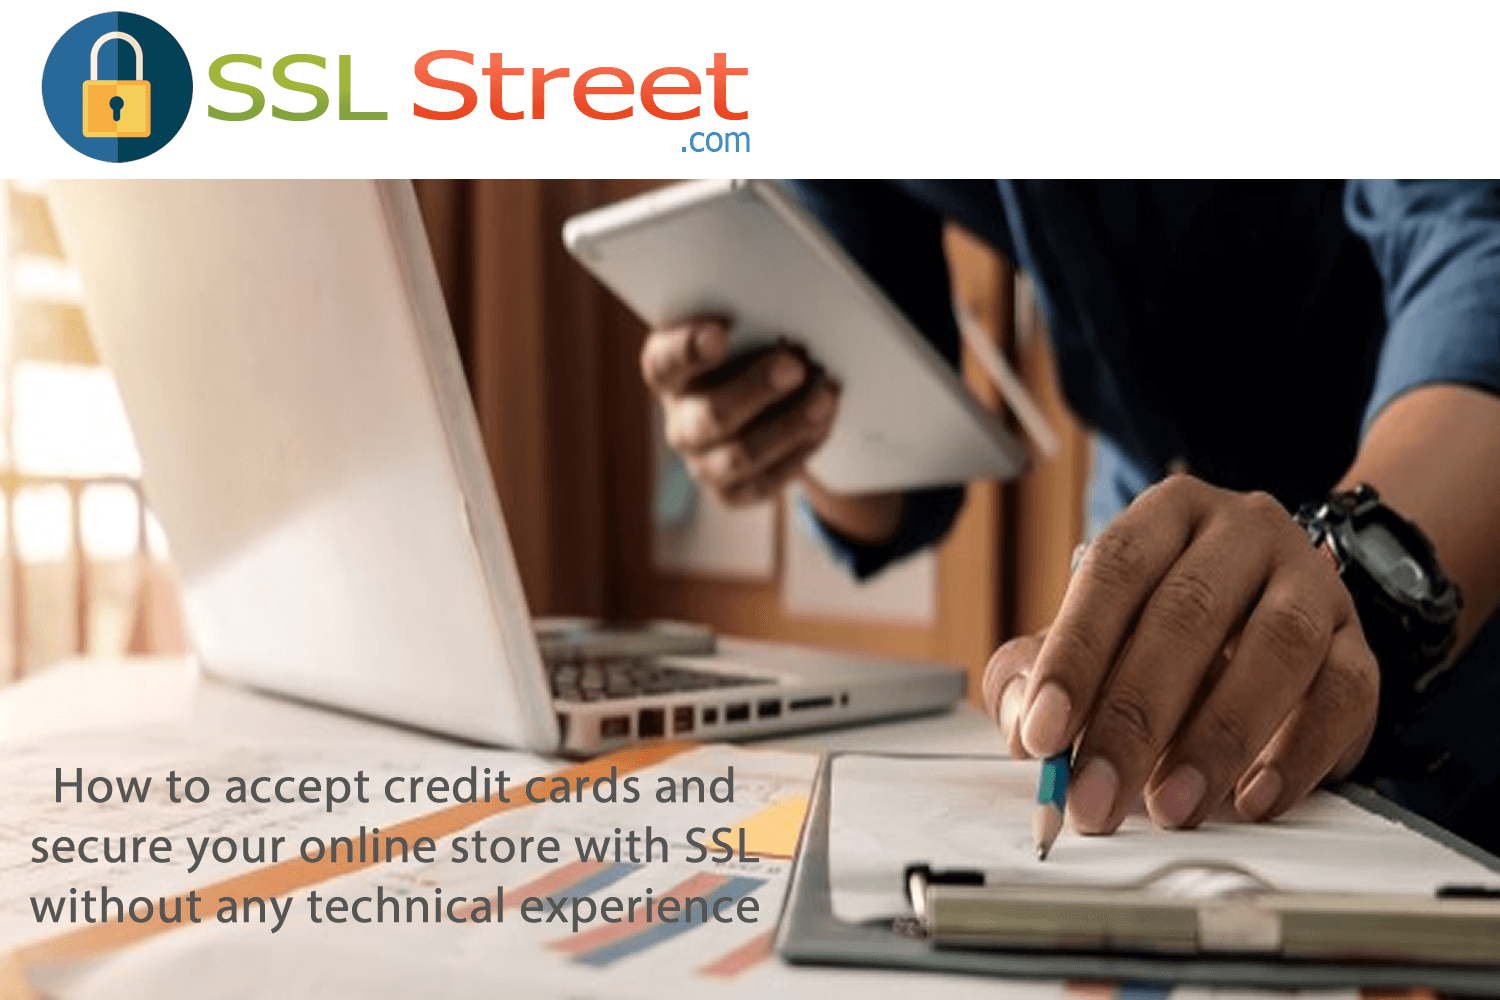 The SSL Street